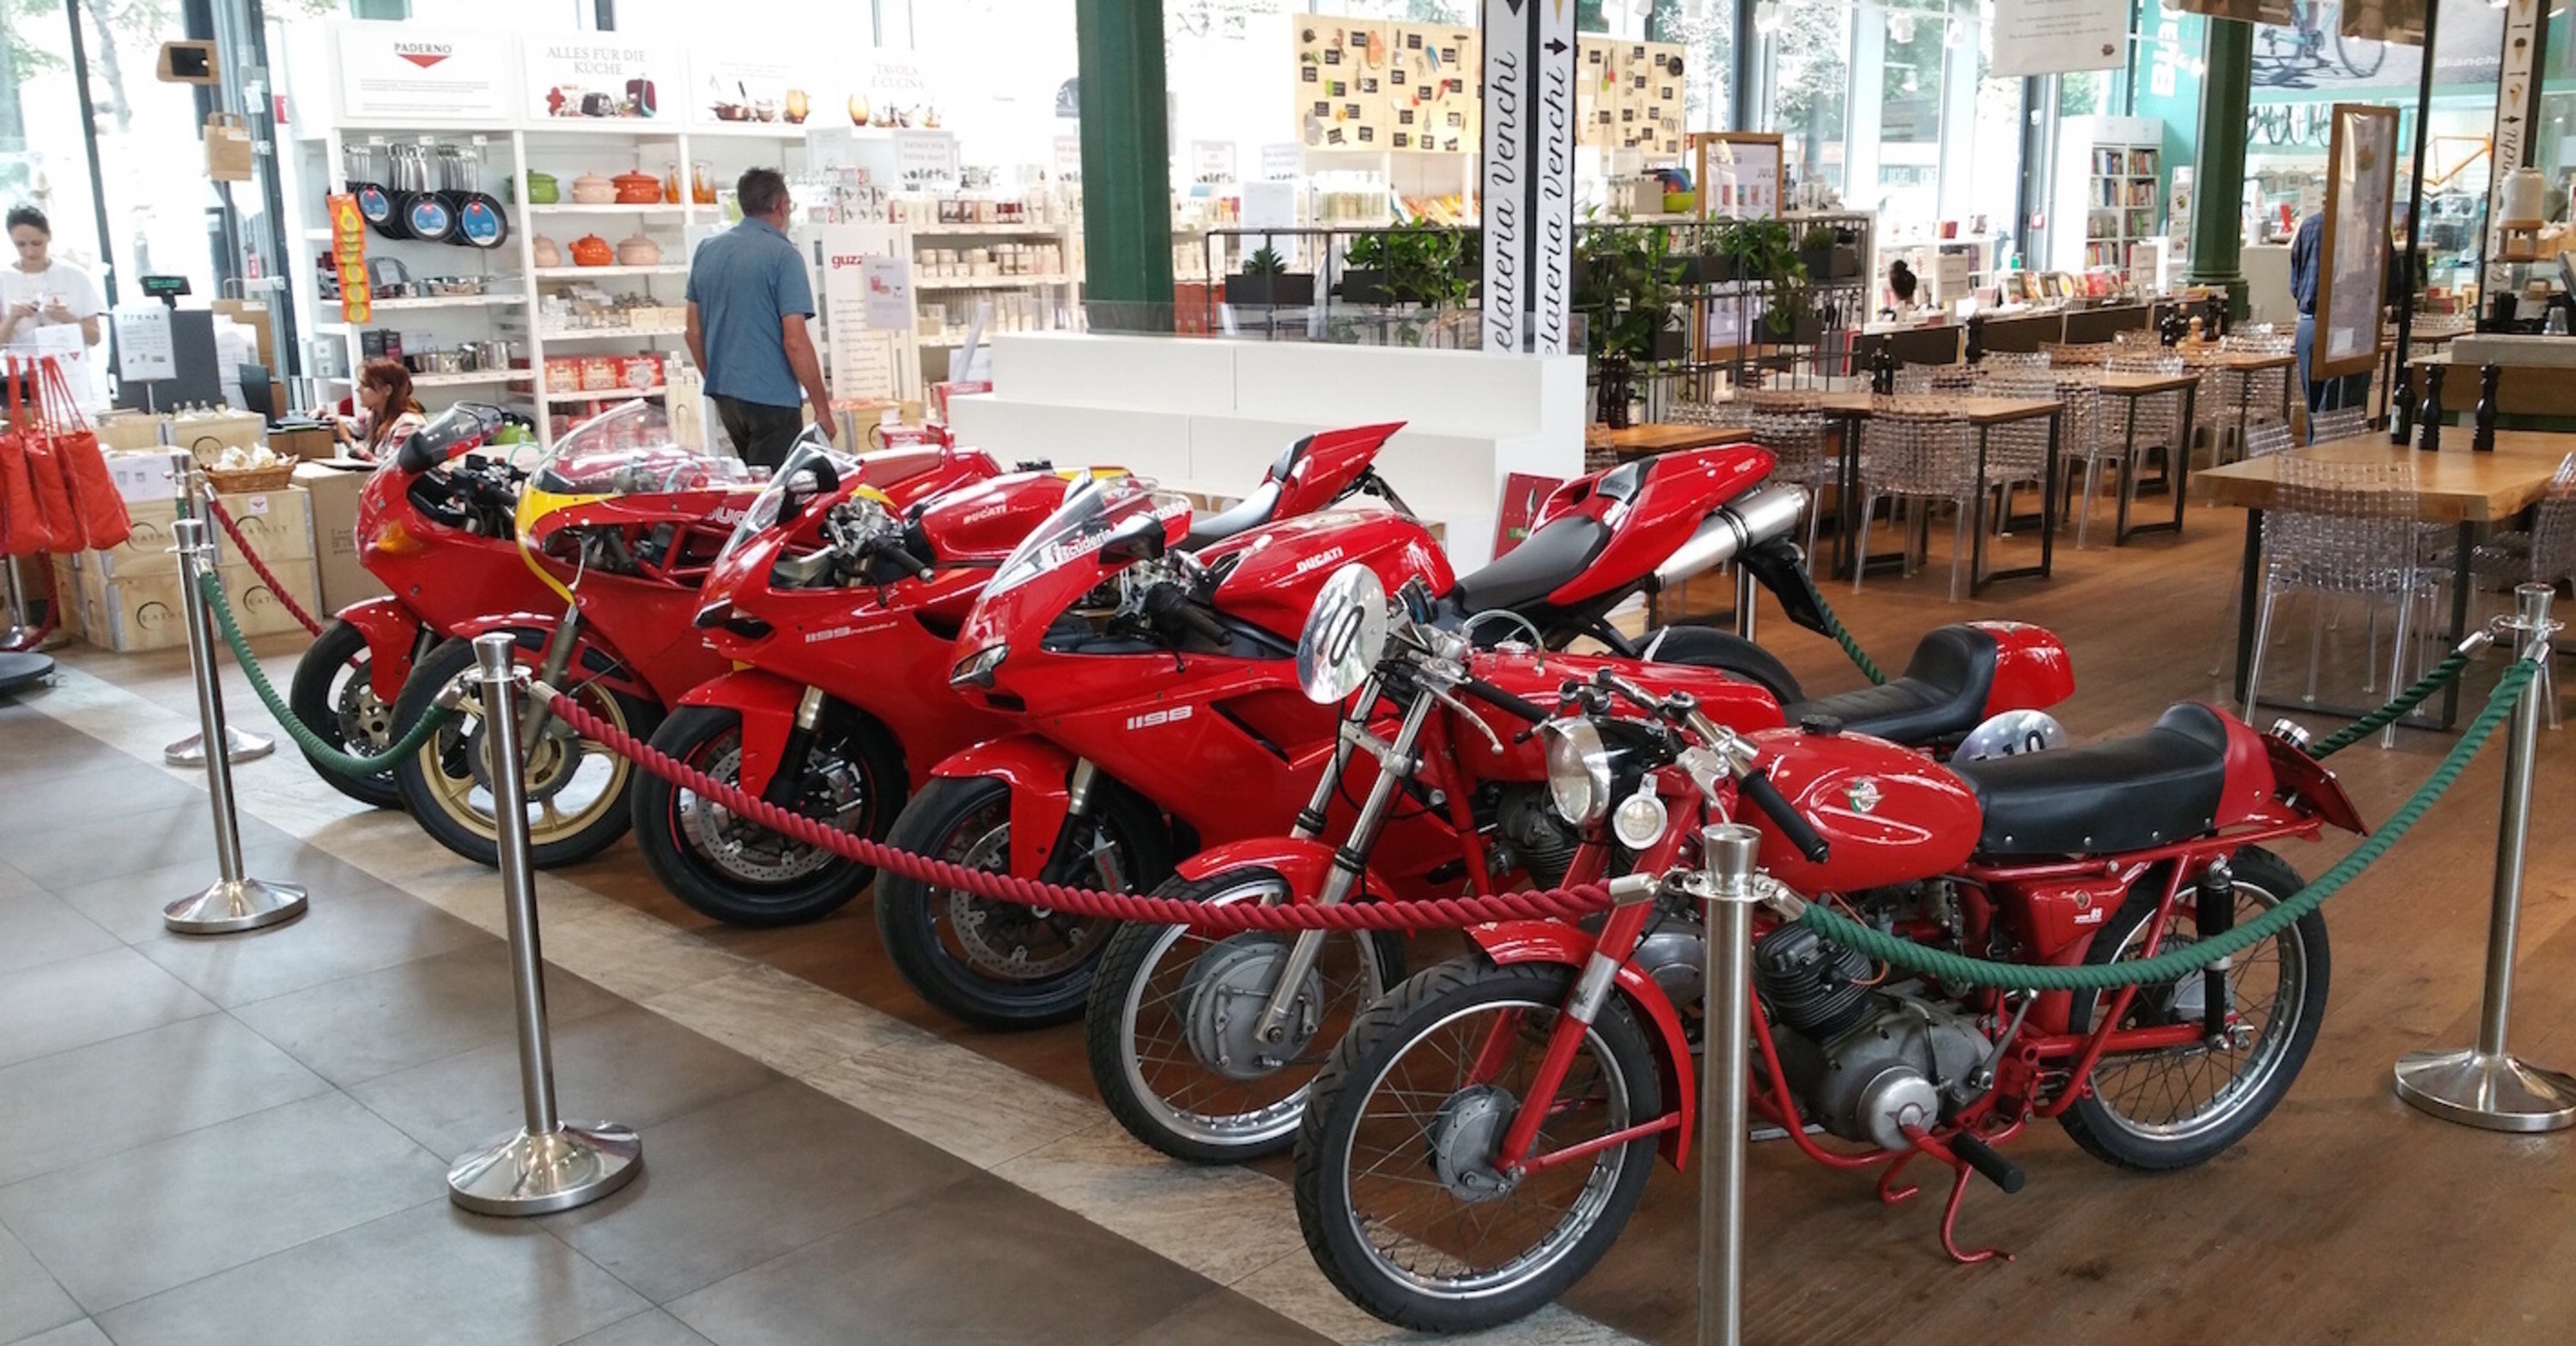 12 Ducati da Eataly a Monaco di Baviera